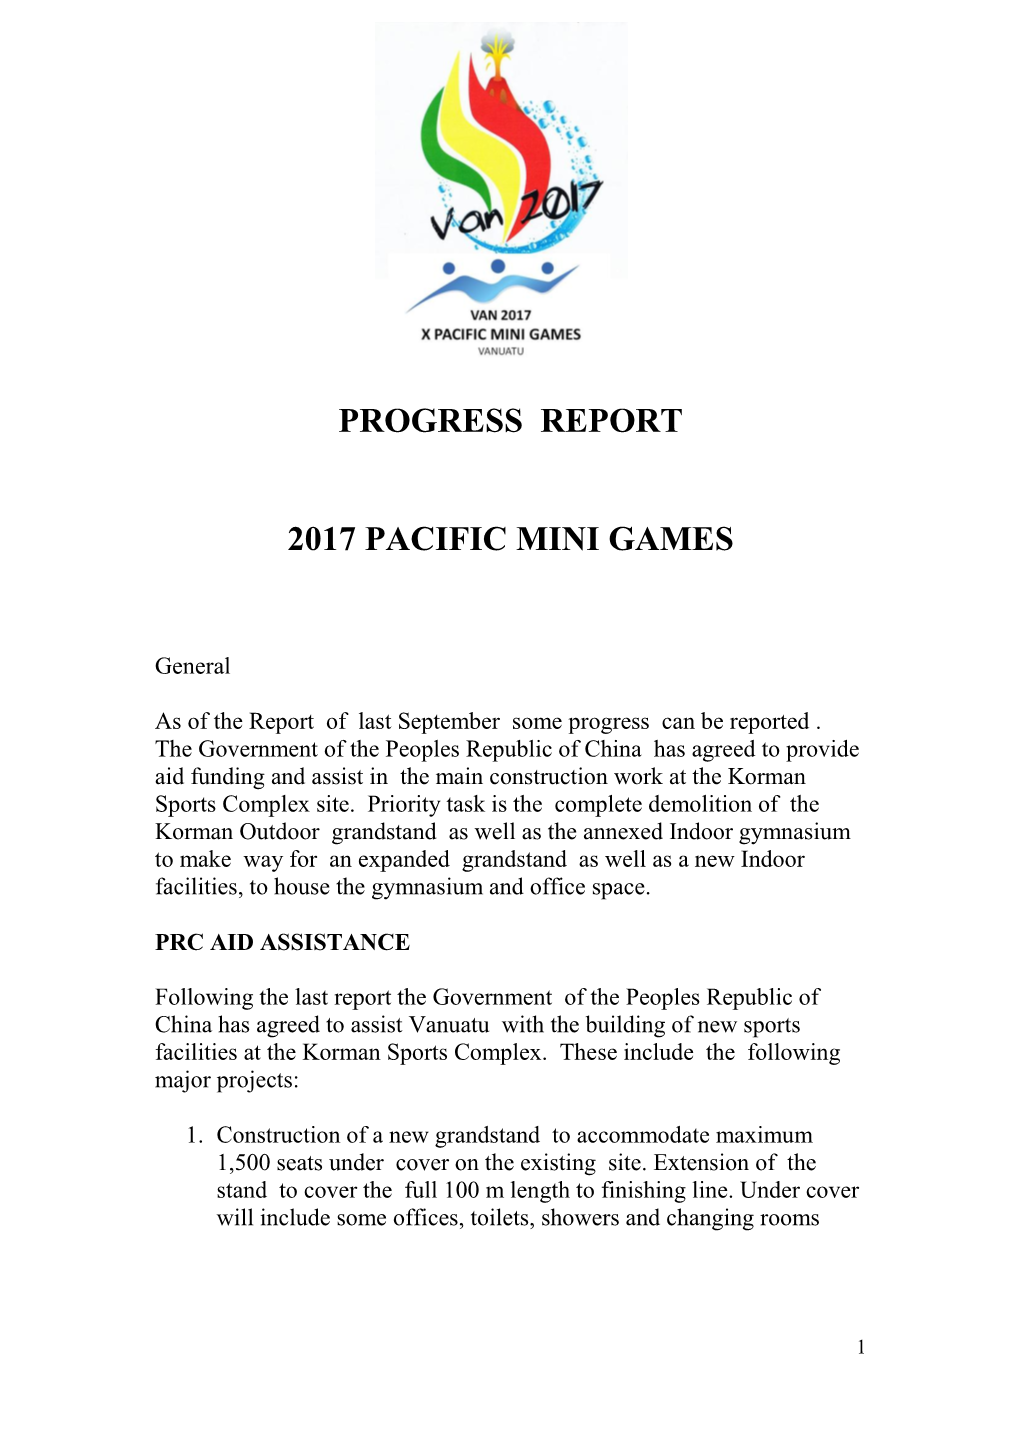 Progress Report 2017 Pacific Mini Games